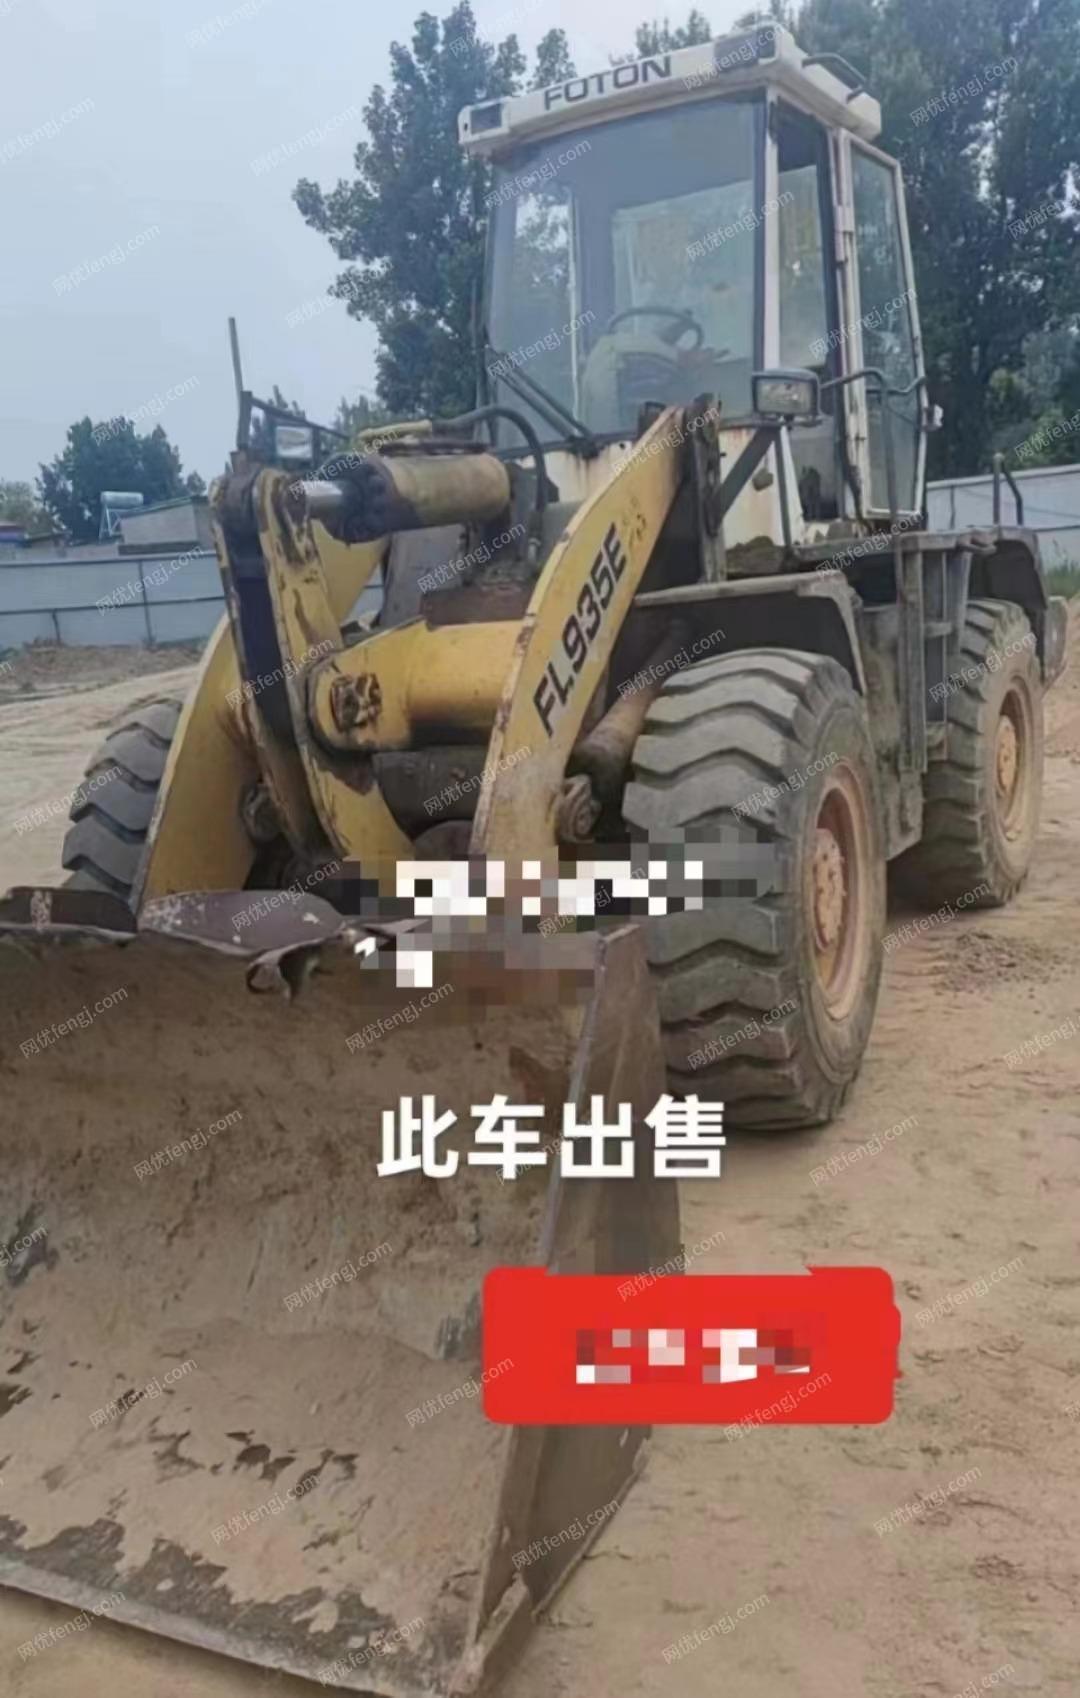 河北沧州正常使用中的工程车一辆废铁价出售